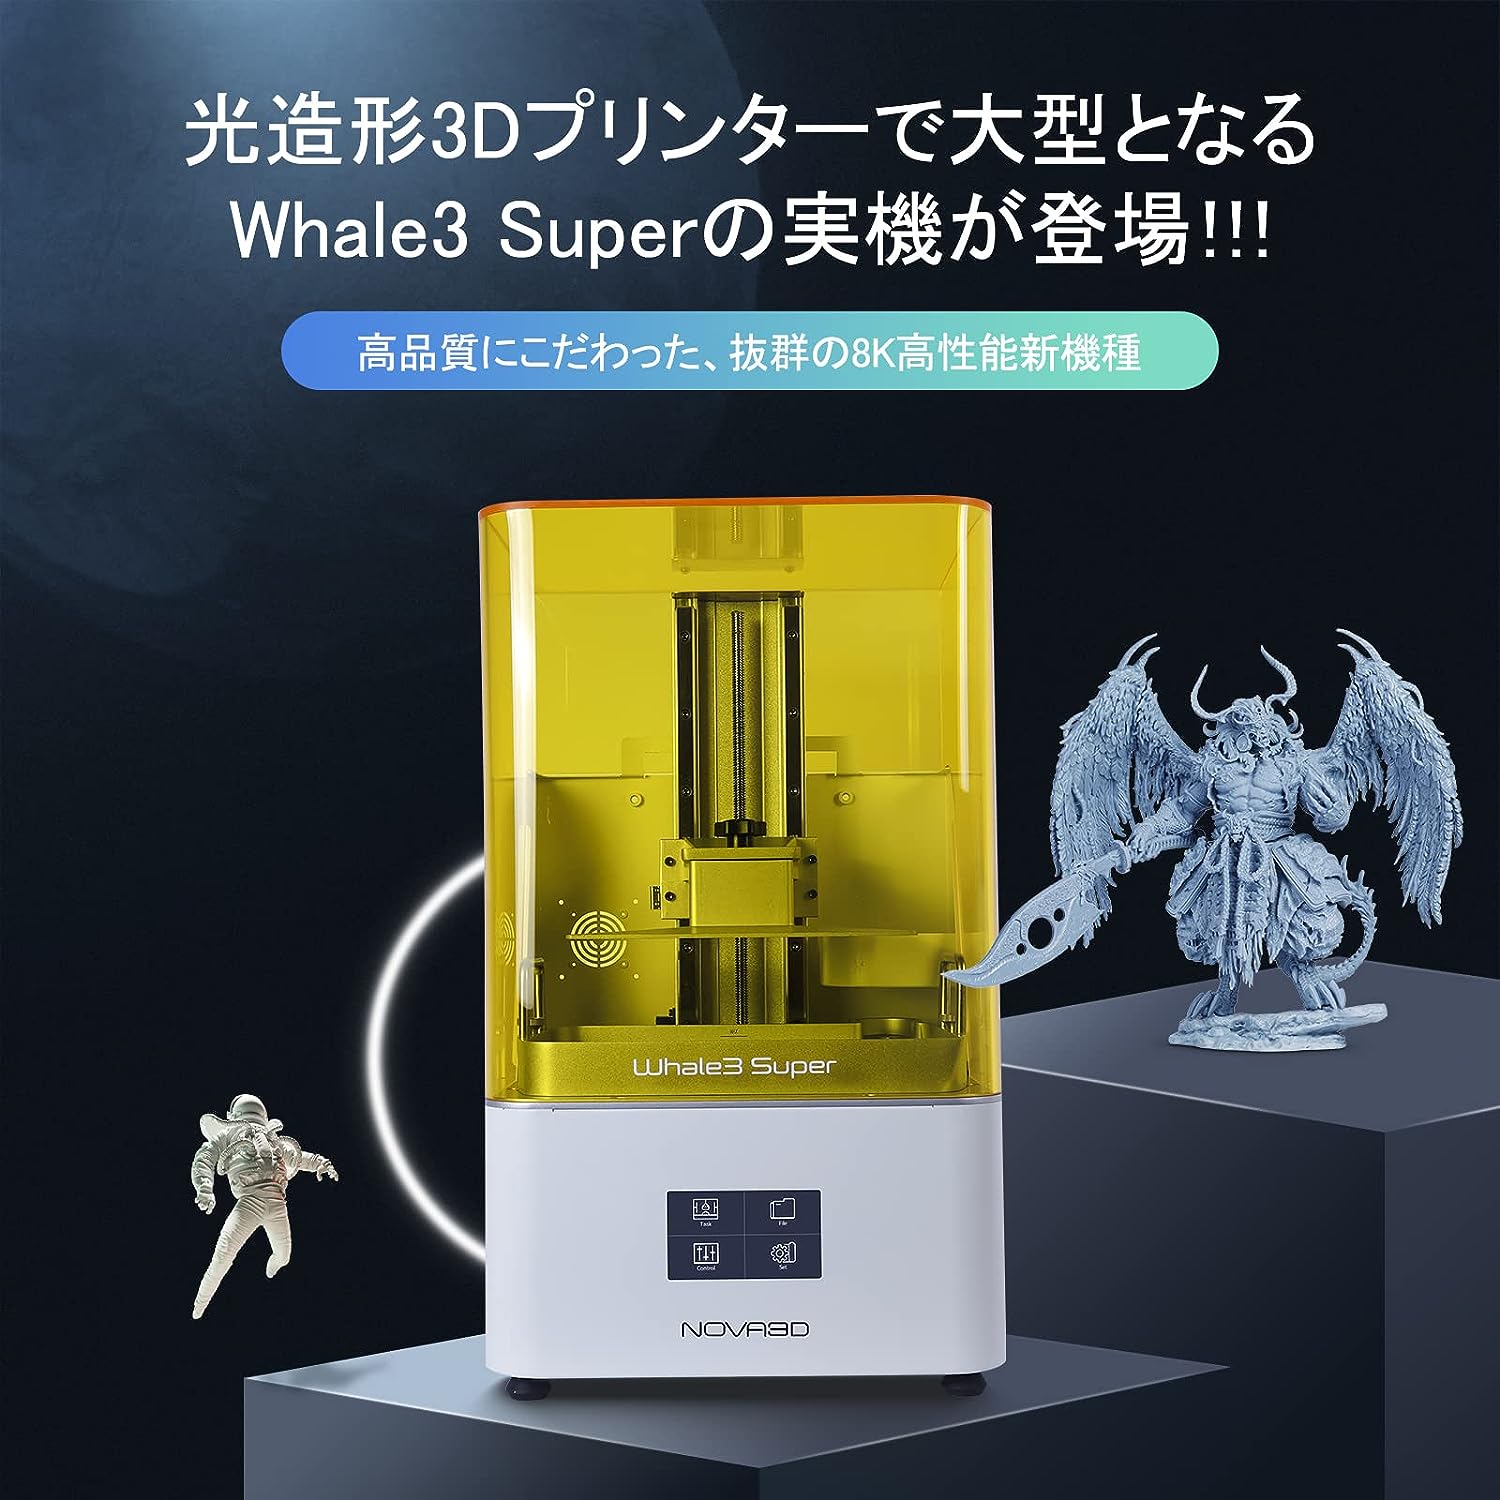 NOVA3D Whale3 Super 10.3インチ 8K 3Dプリンター